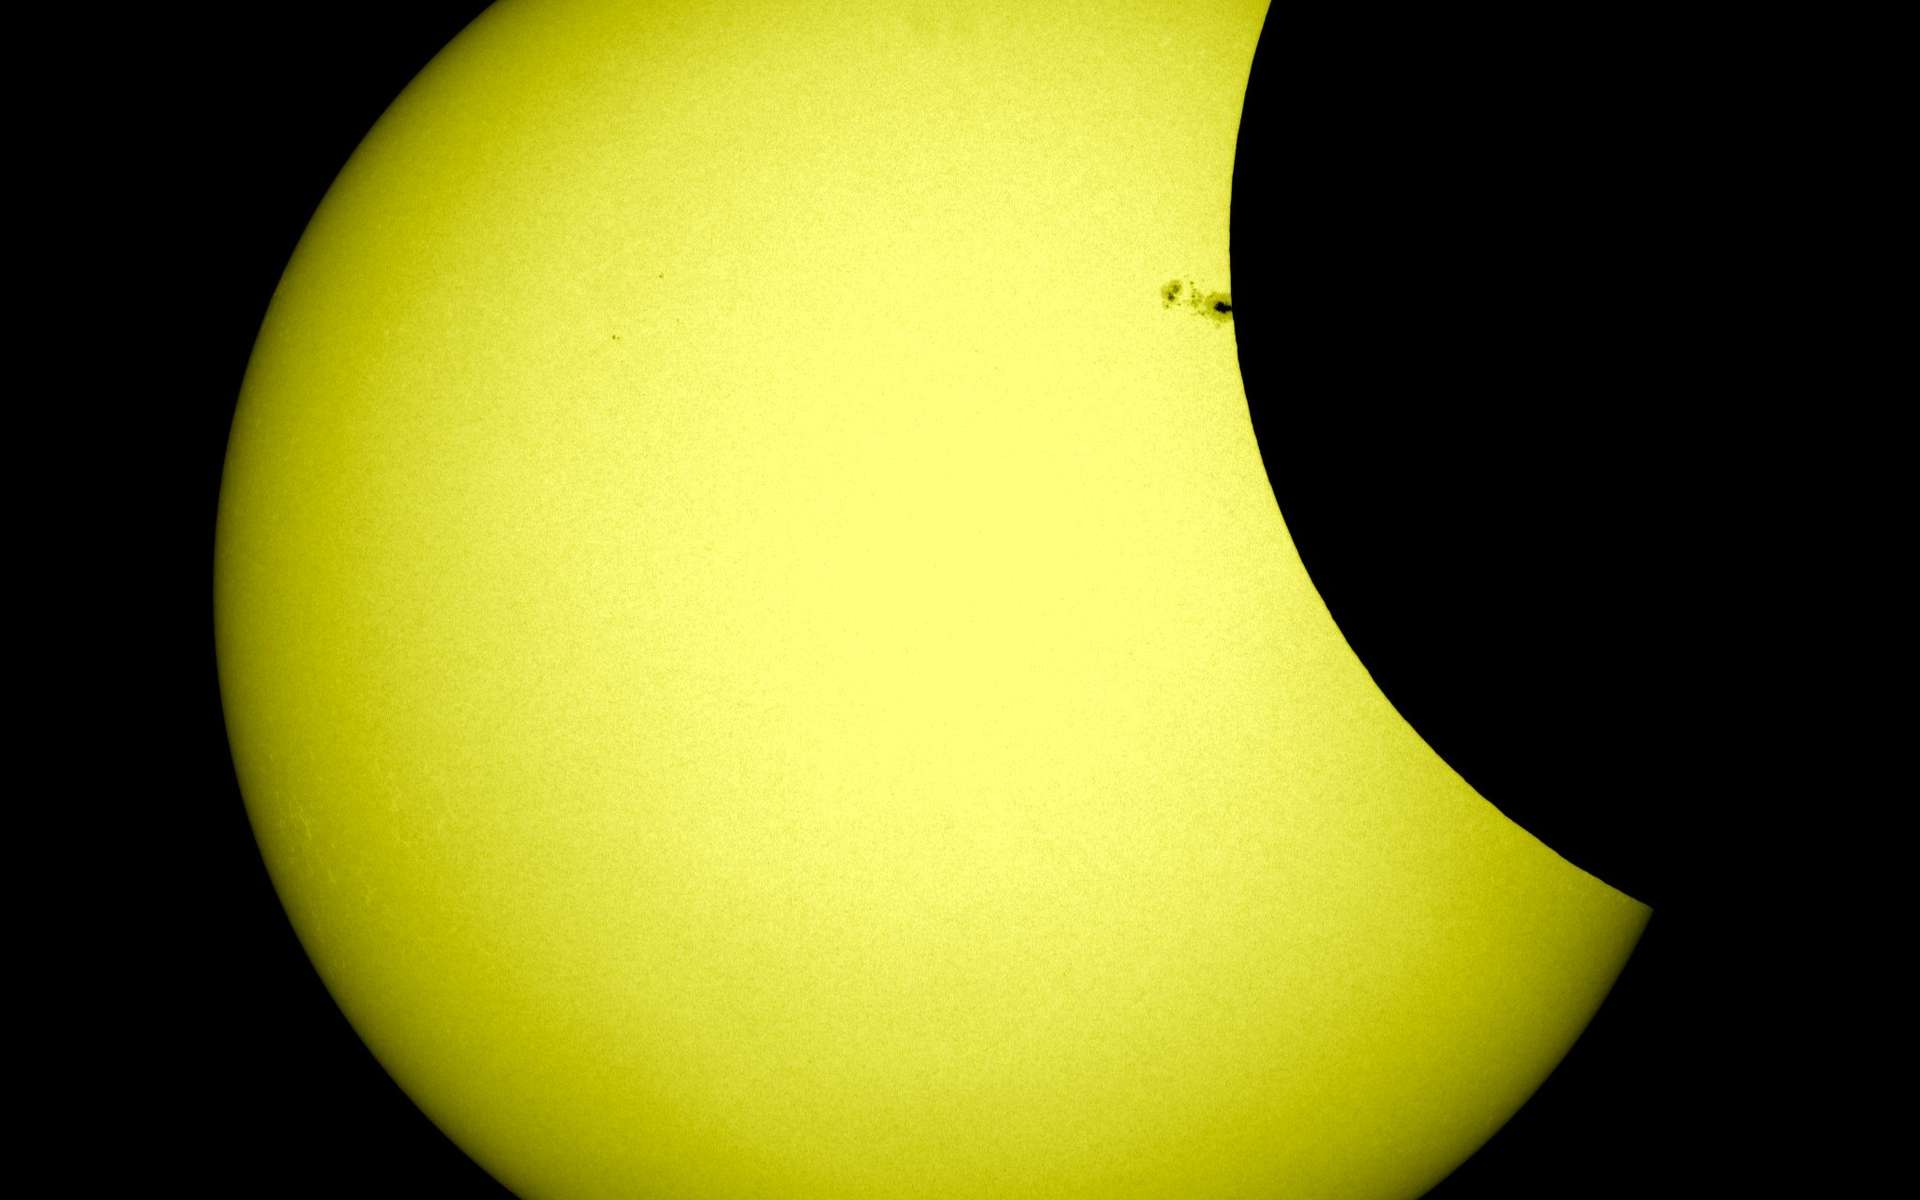 Pendant l'éclipse partielle du 21 février 2012, la Lune a brièvement masqué le groupe de taches solaires AR 1422, une occasion rare pour les scientifiques d'étudier la proportion des rayons UV émis par ces anomalies magnétiques. © Nasa/SDO